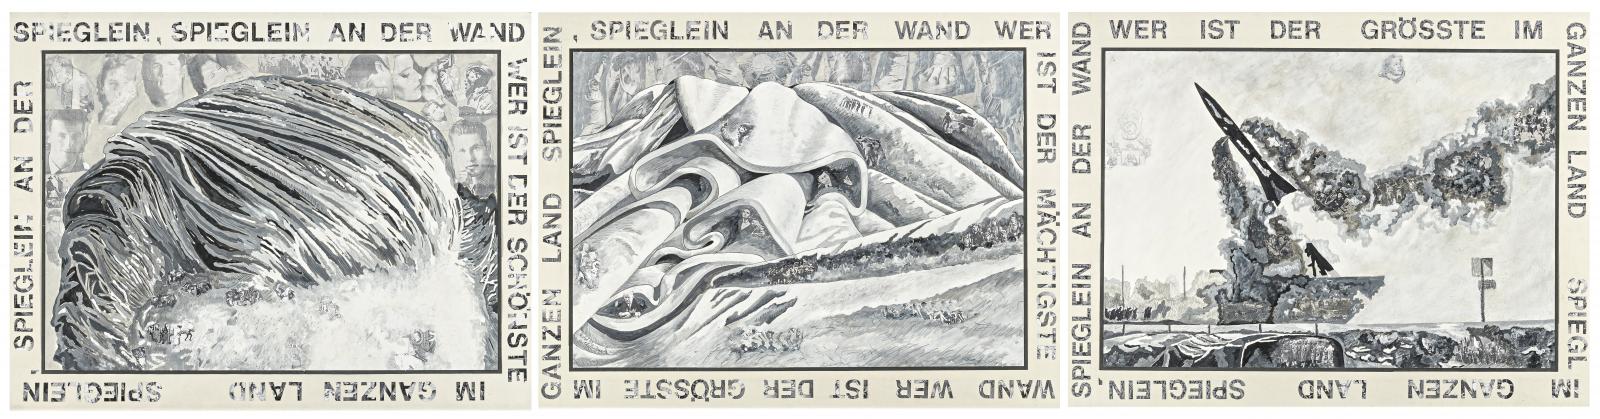 Marcel Odenbach - Spieglein Spieglein an der Wand, 70001-824, Van Ham Kunstauktionen